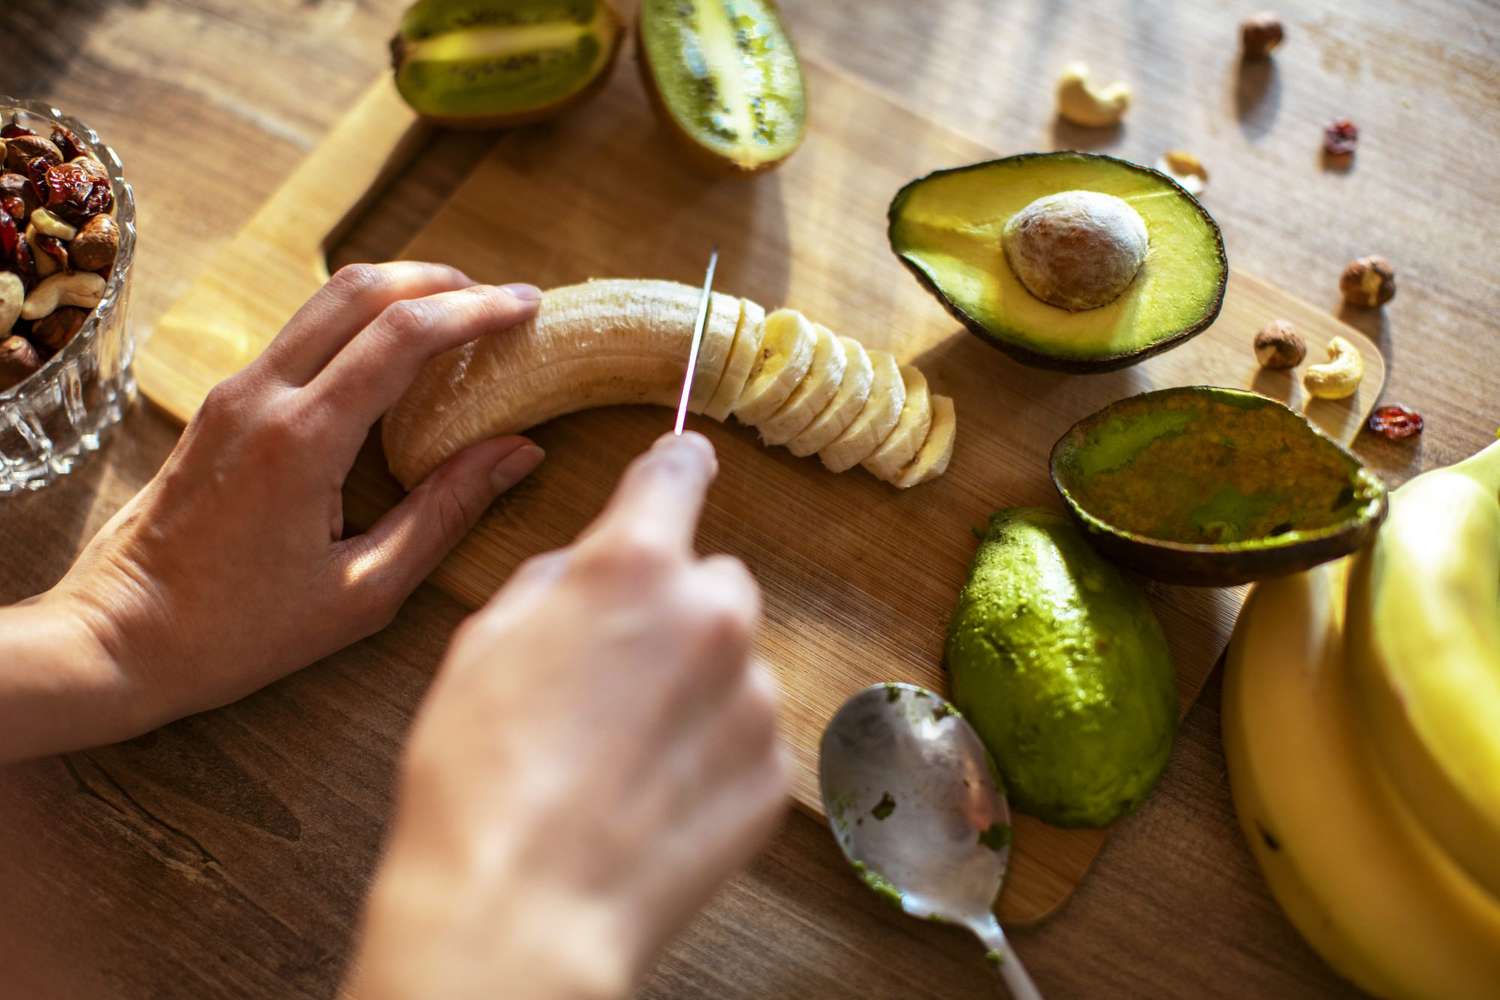 woman slicing banana and avocado